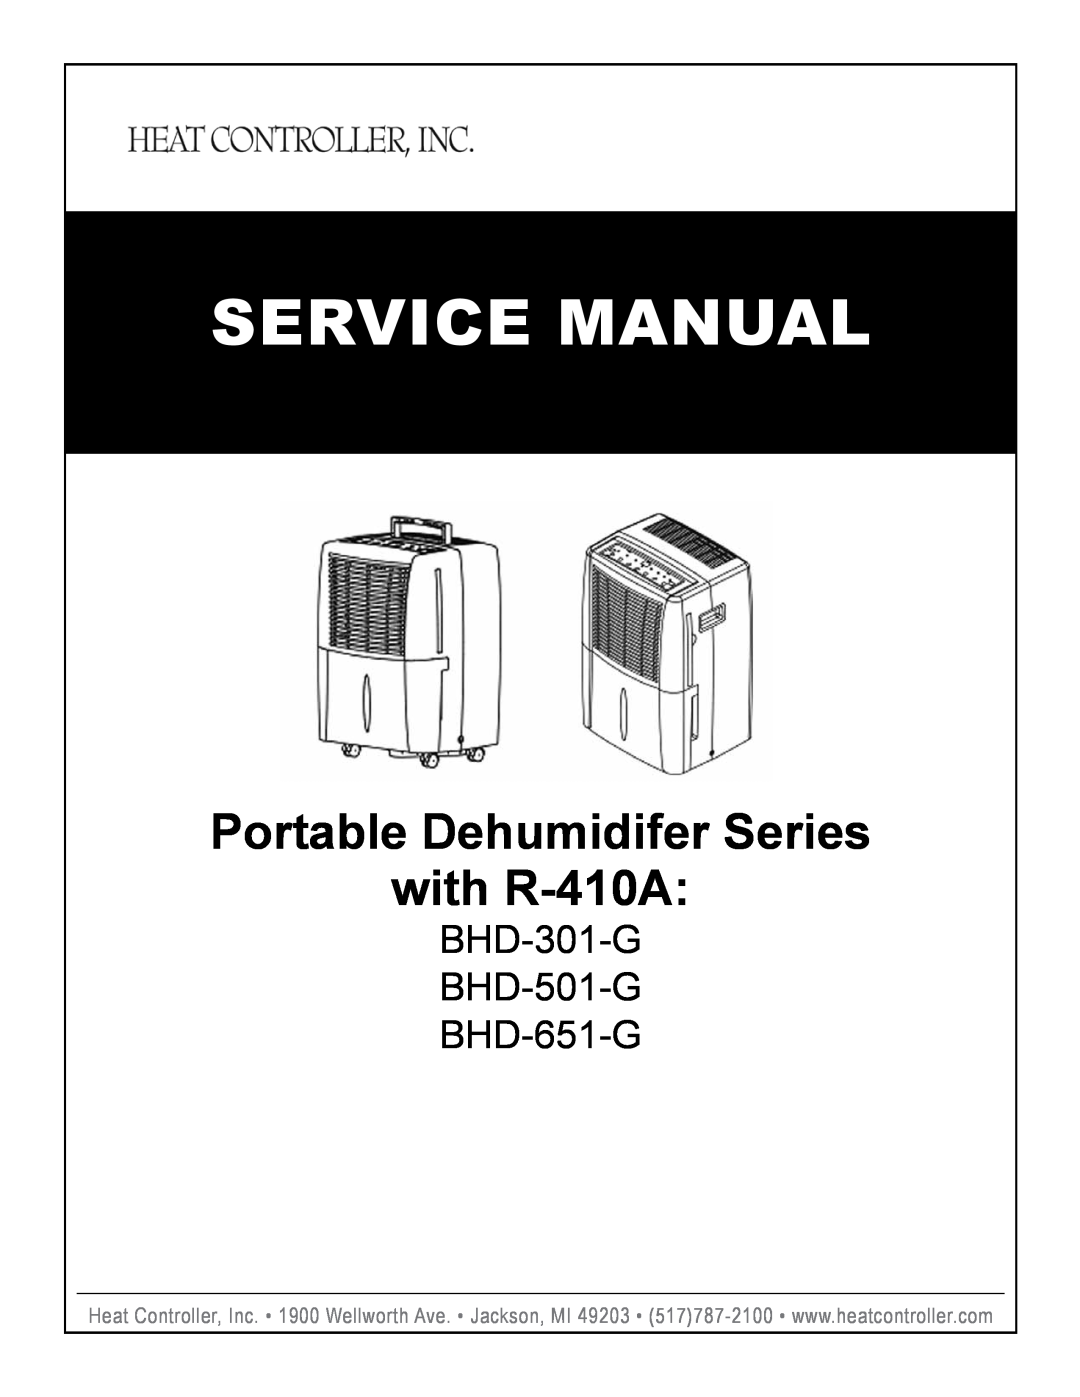 Heat Controller service manual Portable Dehumidifer Series with R-410A, BHD-301-G BHD-501-G BHD-651-G 